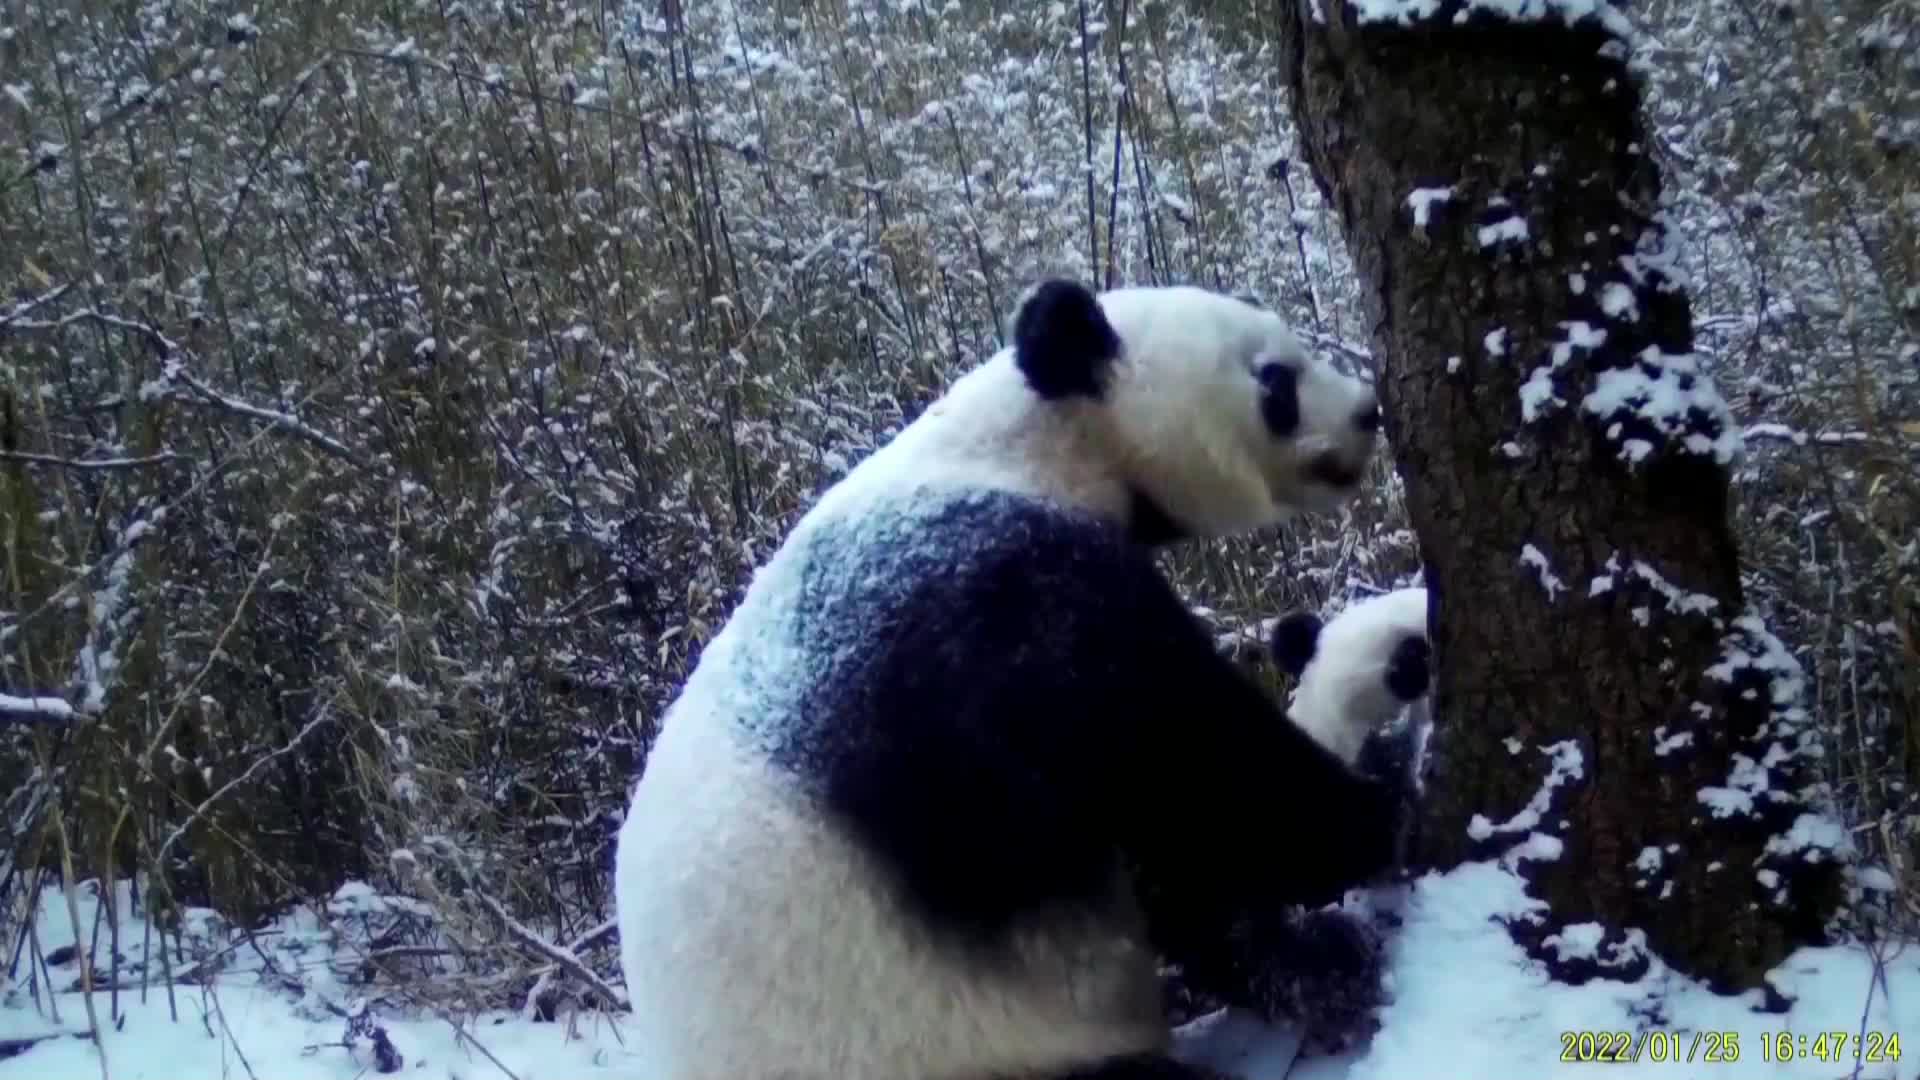 Вижте как майка панда се "кара" на своето малко (ВИДЕО)